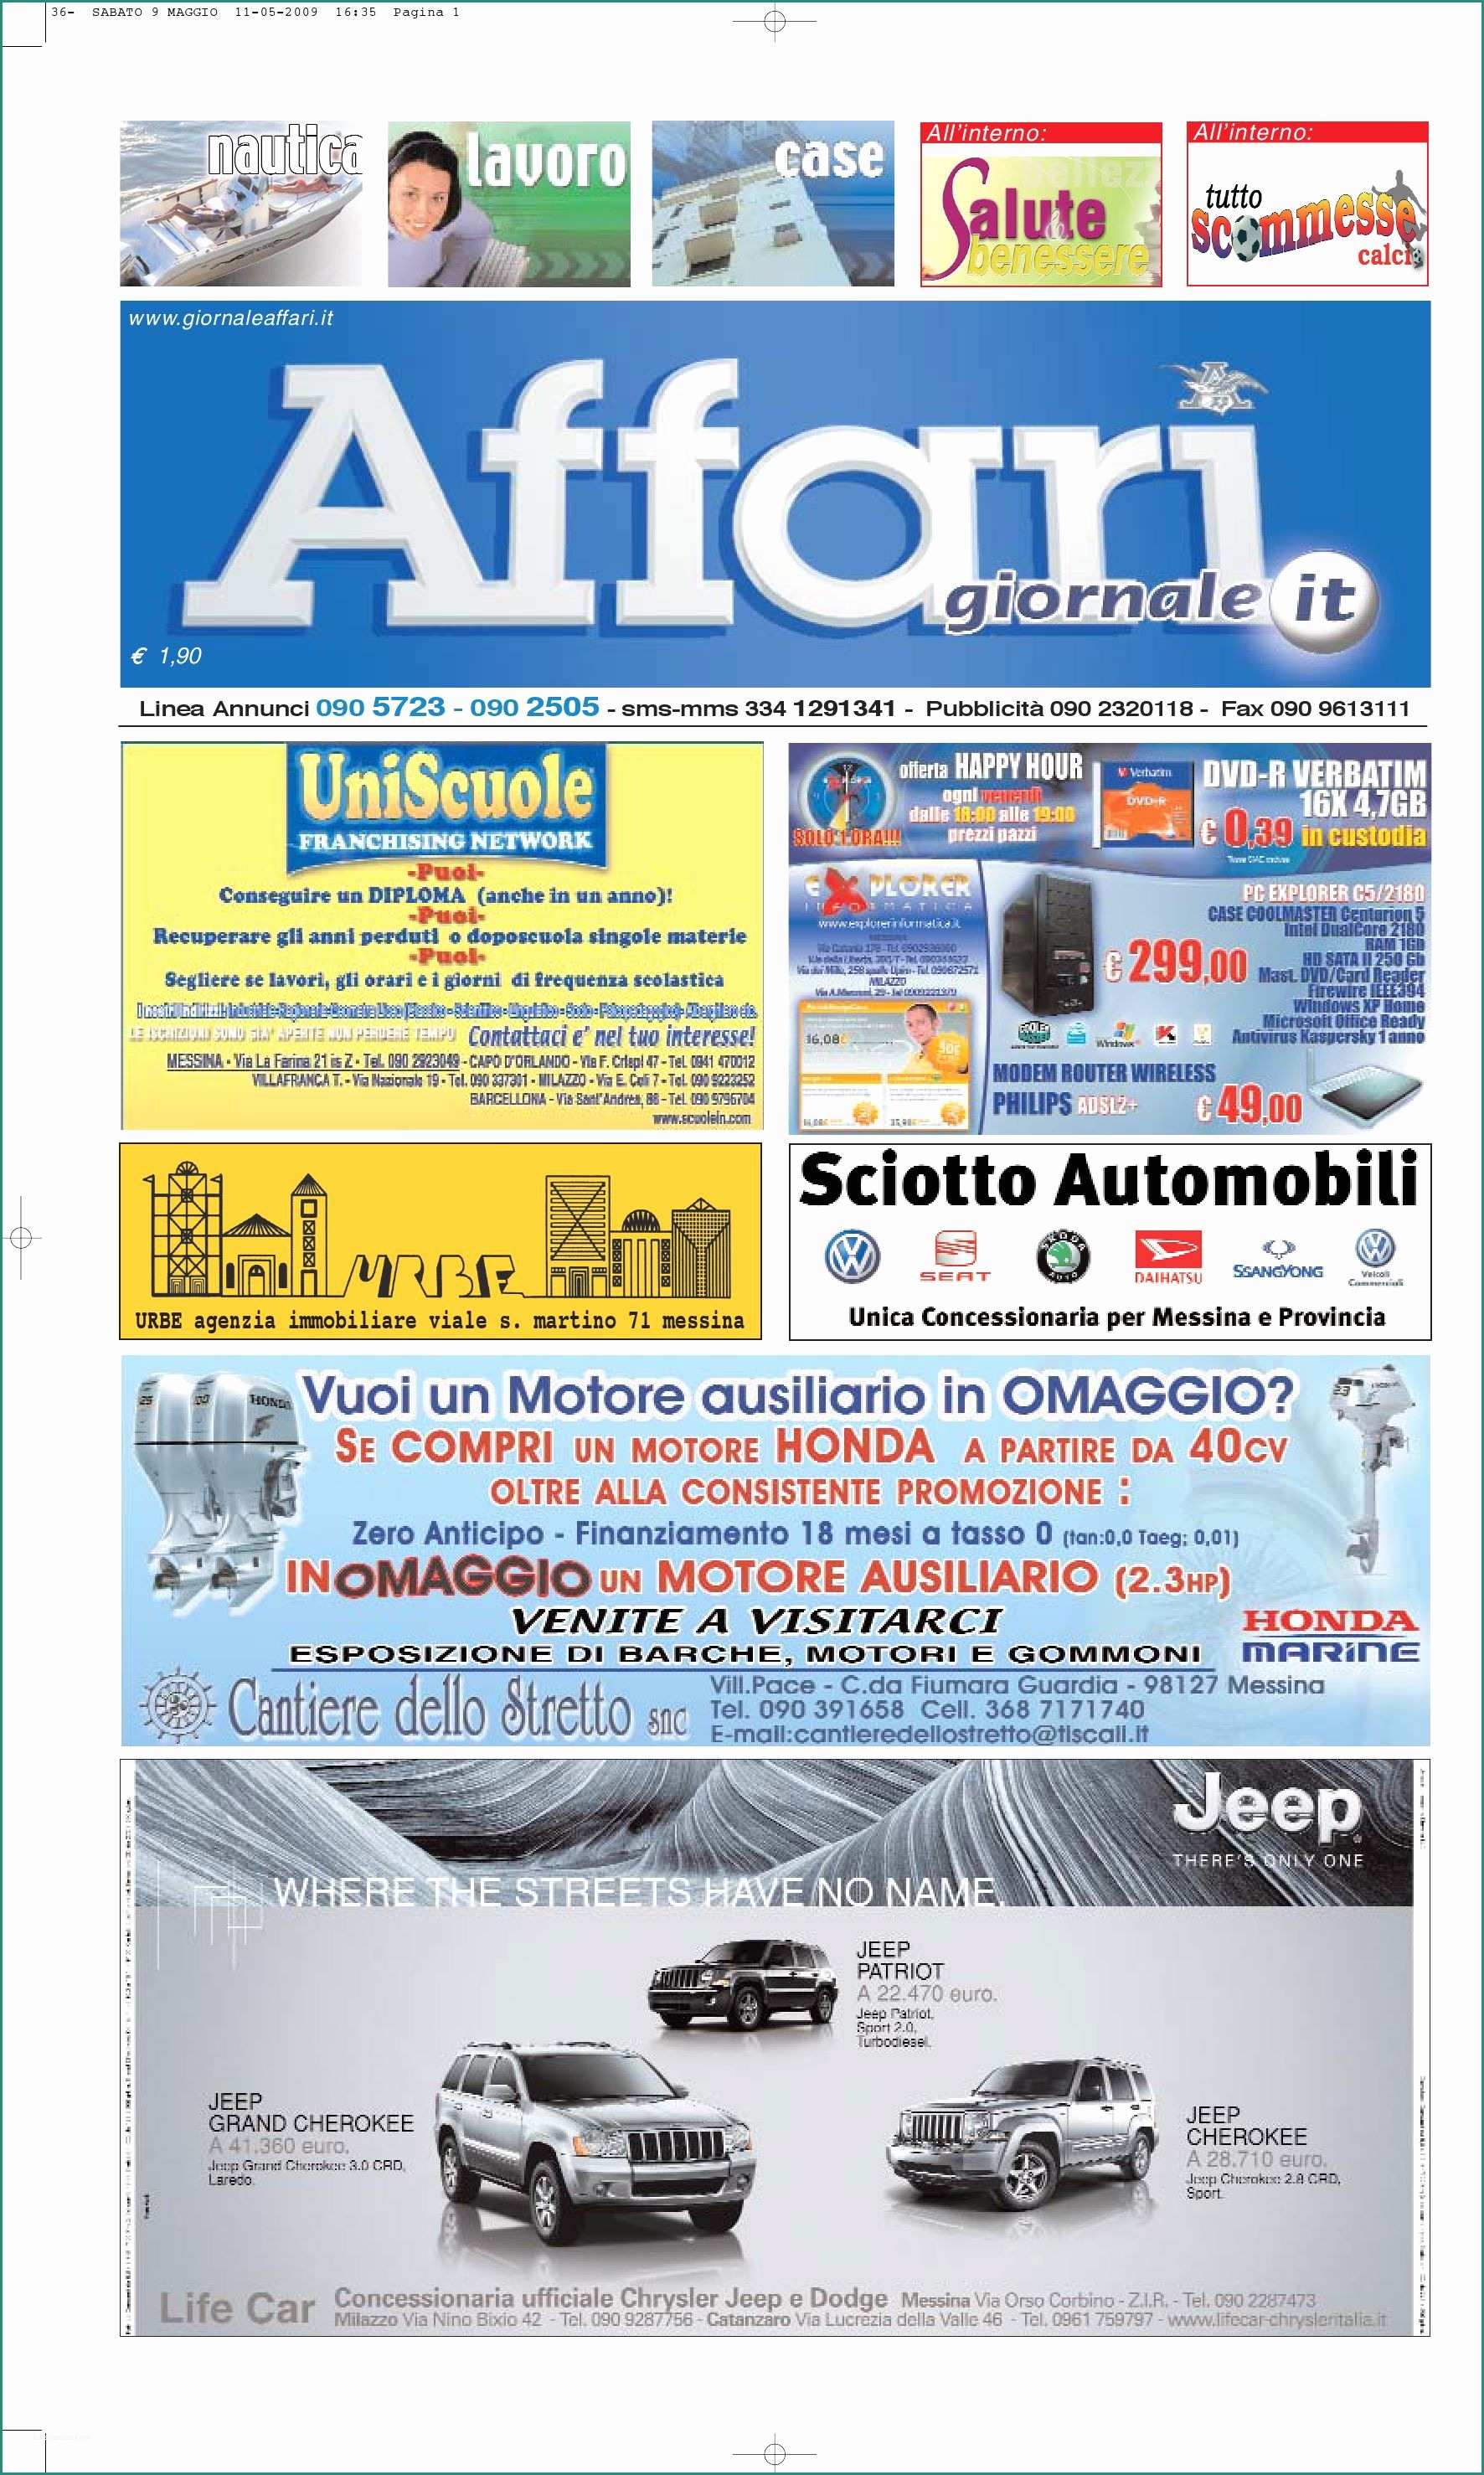 Vendo attrezzatura Officina Usata E Giornale Affar Sabato 9 Maggio 2009 by Editoriale Affari Srl issuu